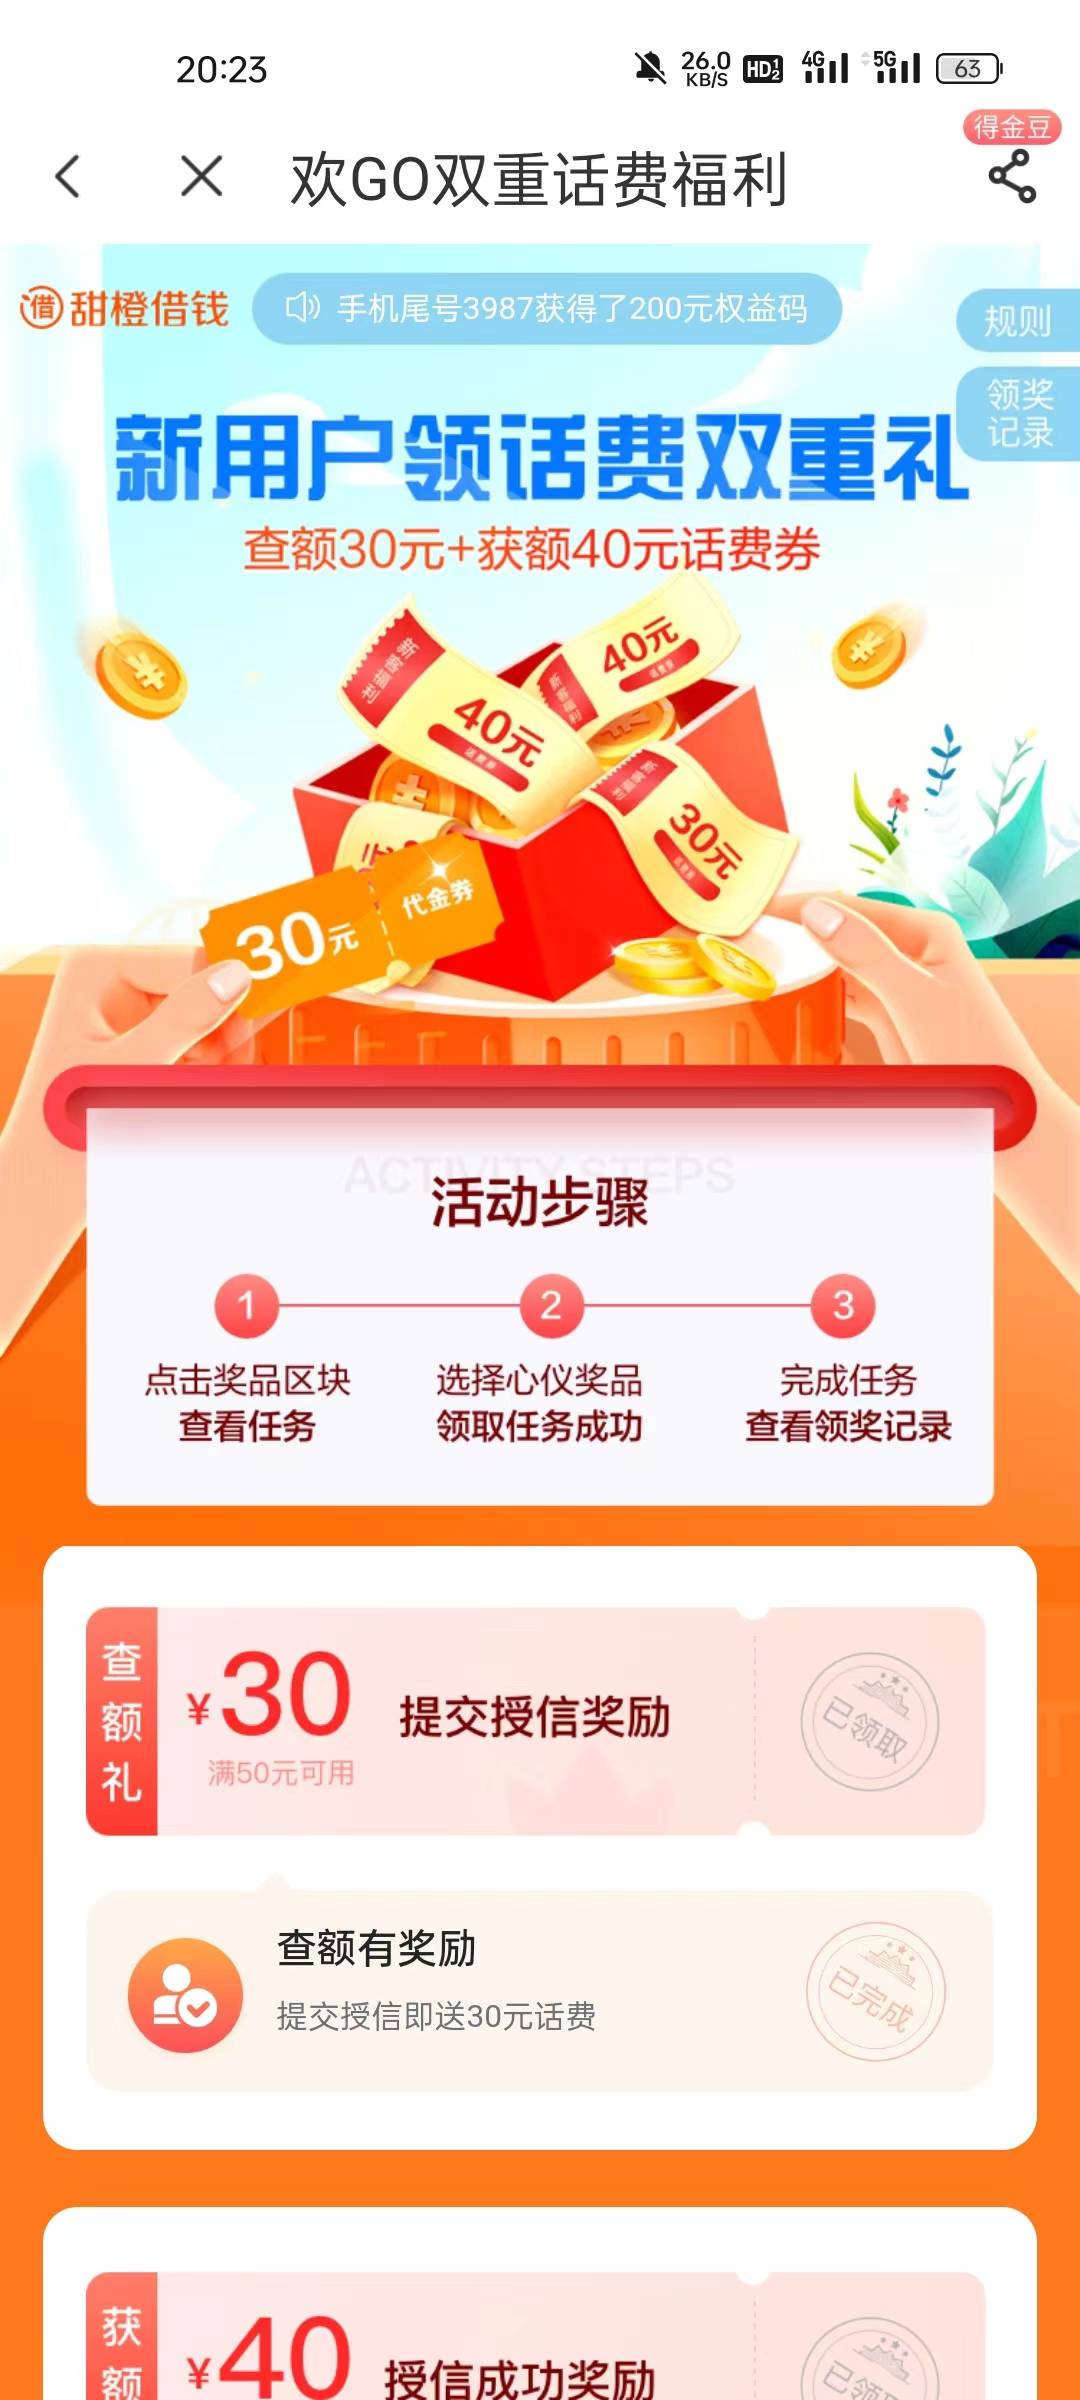 中国电信app欢GO双重话费福利活动
​查额度就有，基本人人有，
移动联通电信号码都可0 / 作者:A仙仙仙 / 